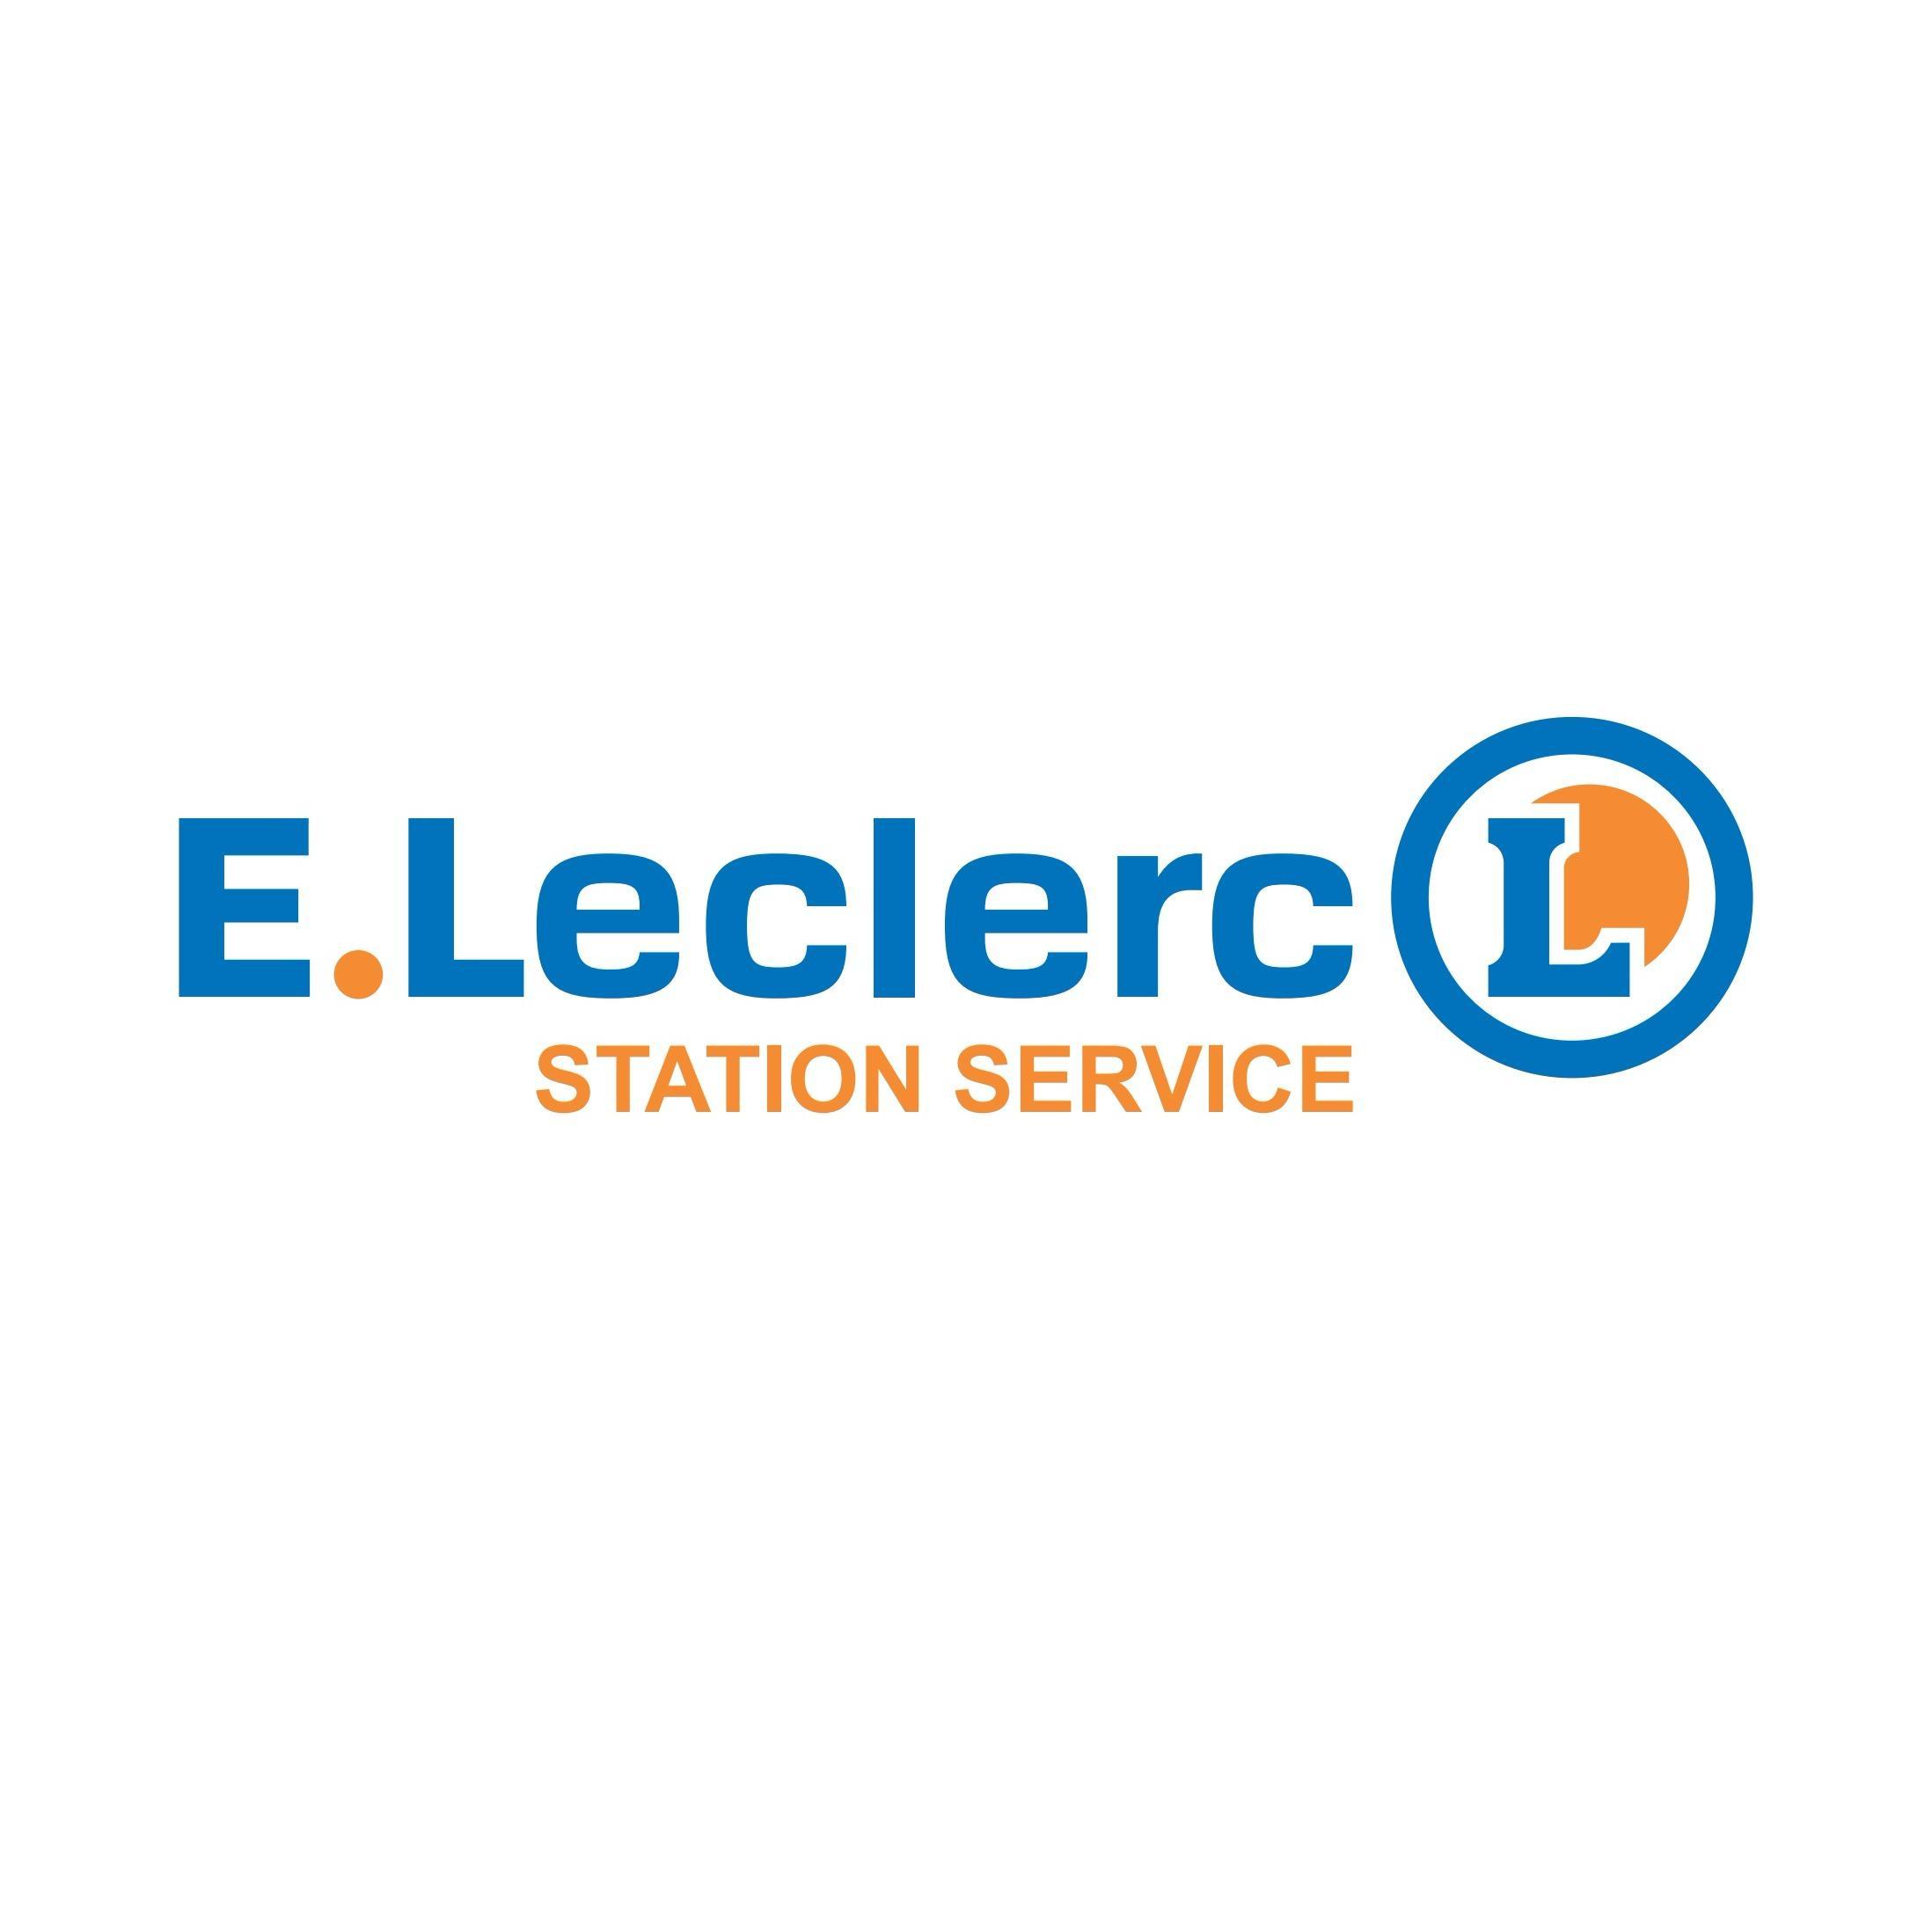 E.leclerc Station Service Anglet